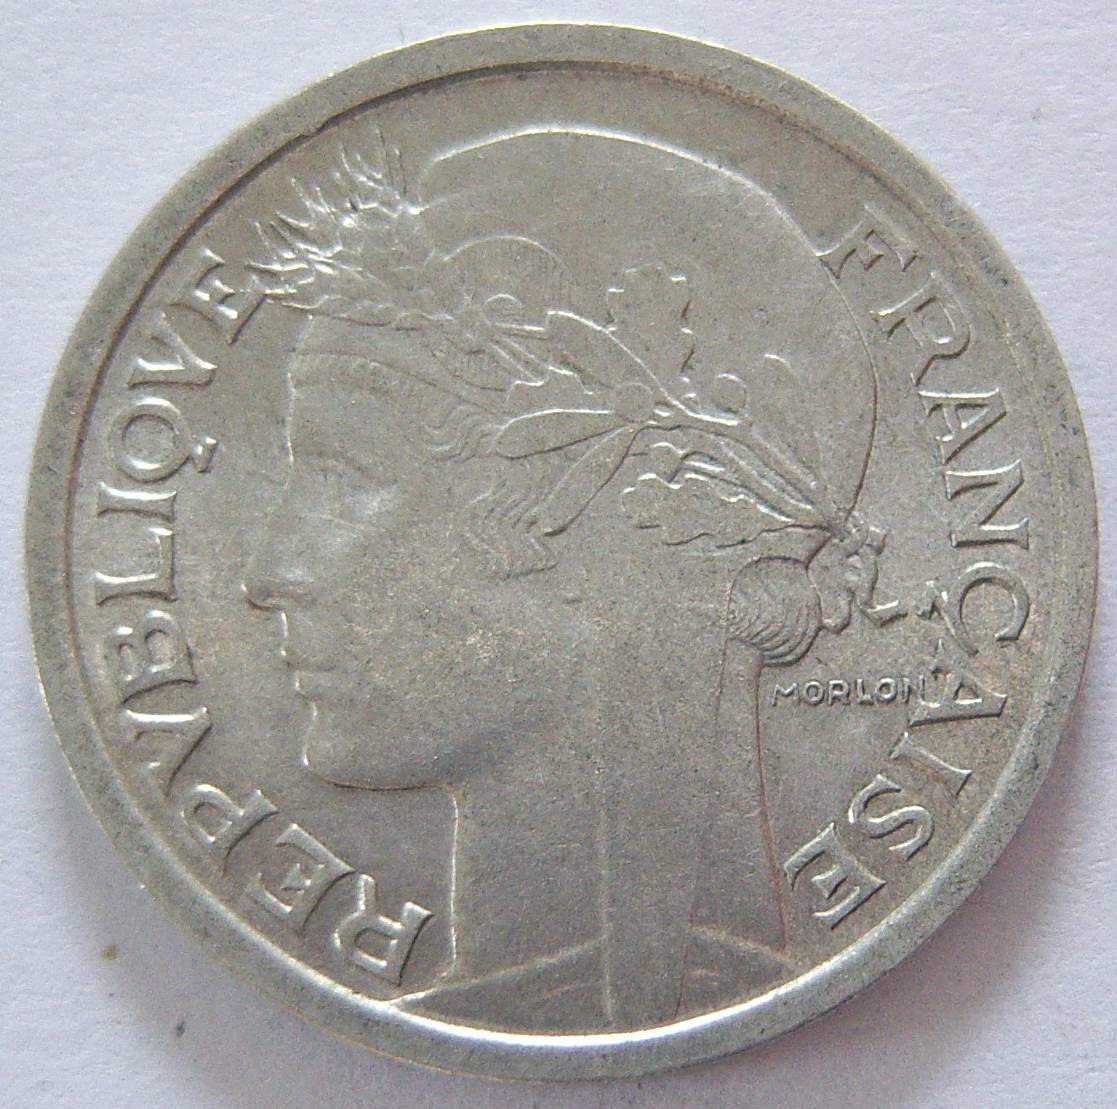  Frankreich 1 Franc 1958   